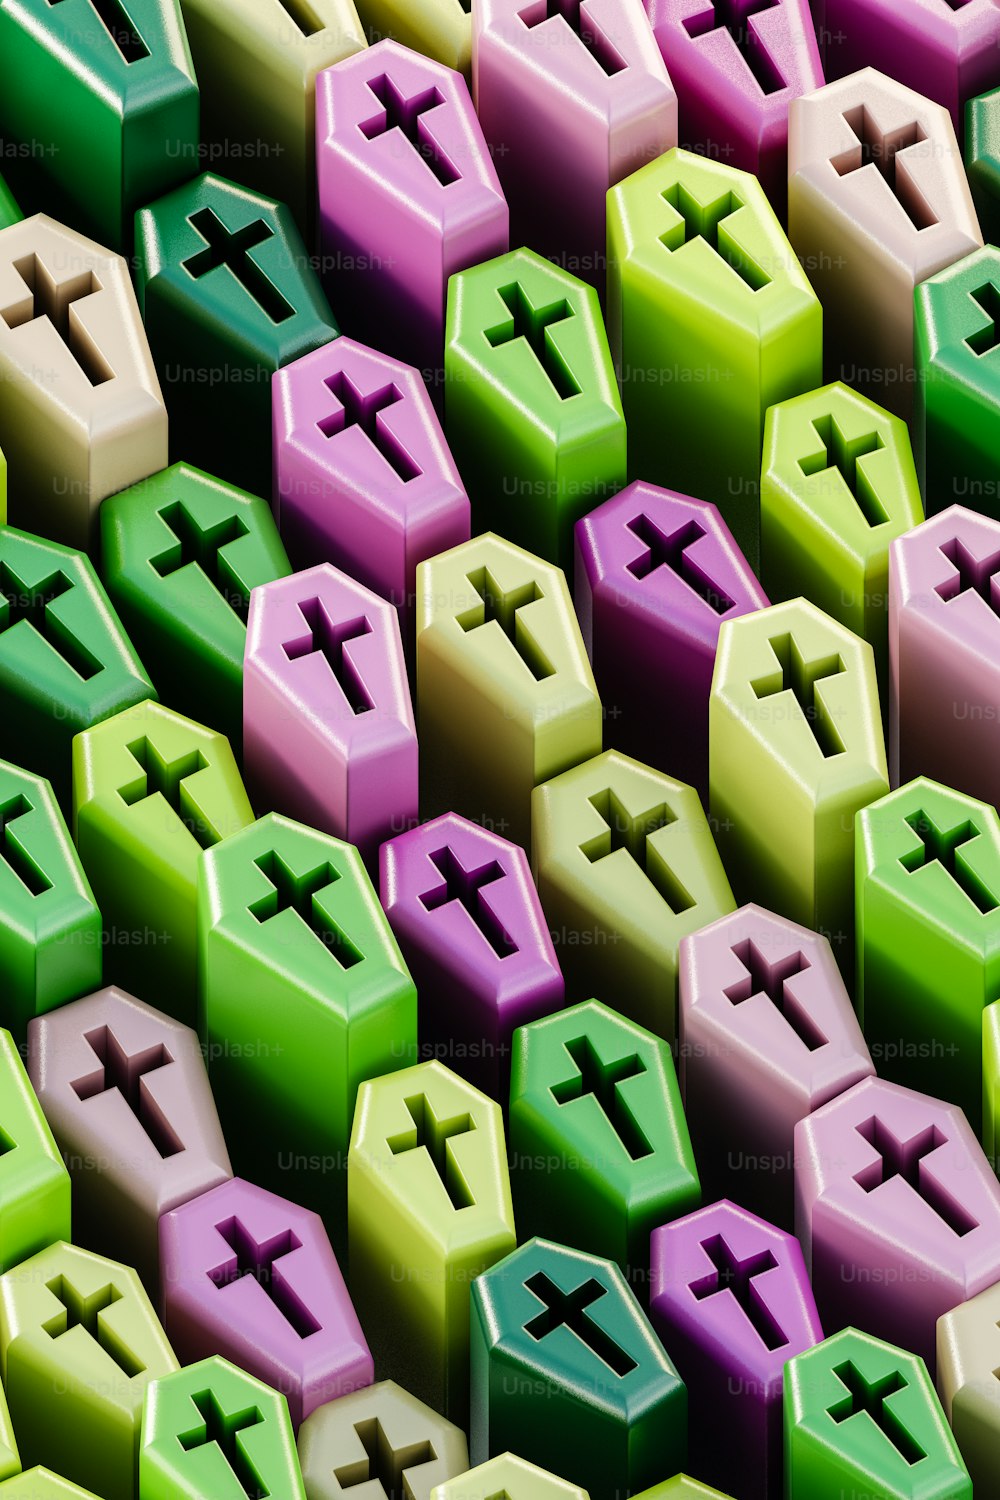 eine Gruppe von mehrfarbigen Objekten mit Kreuzen darauf